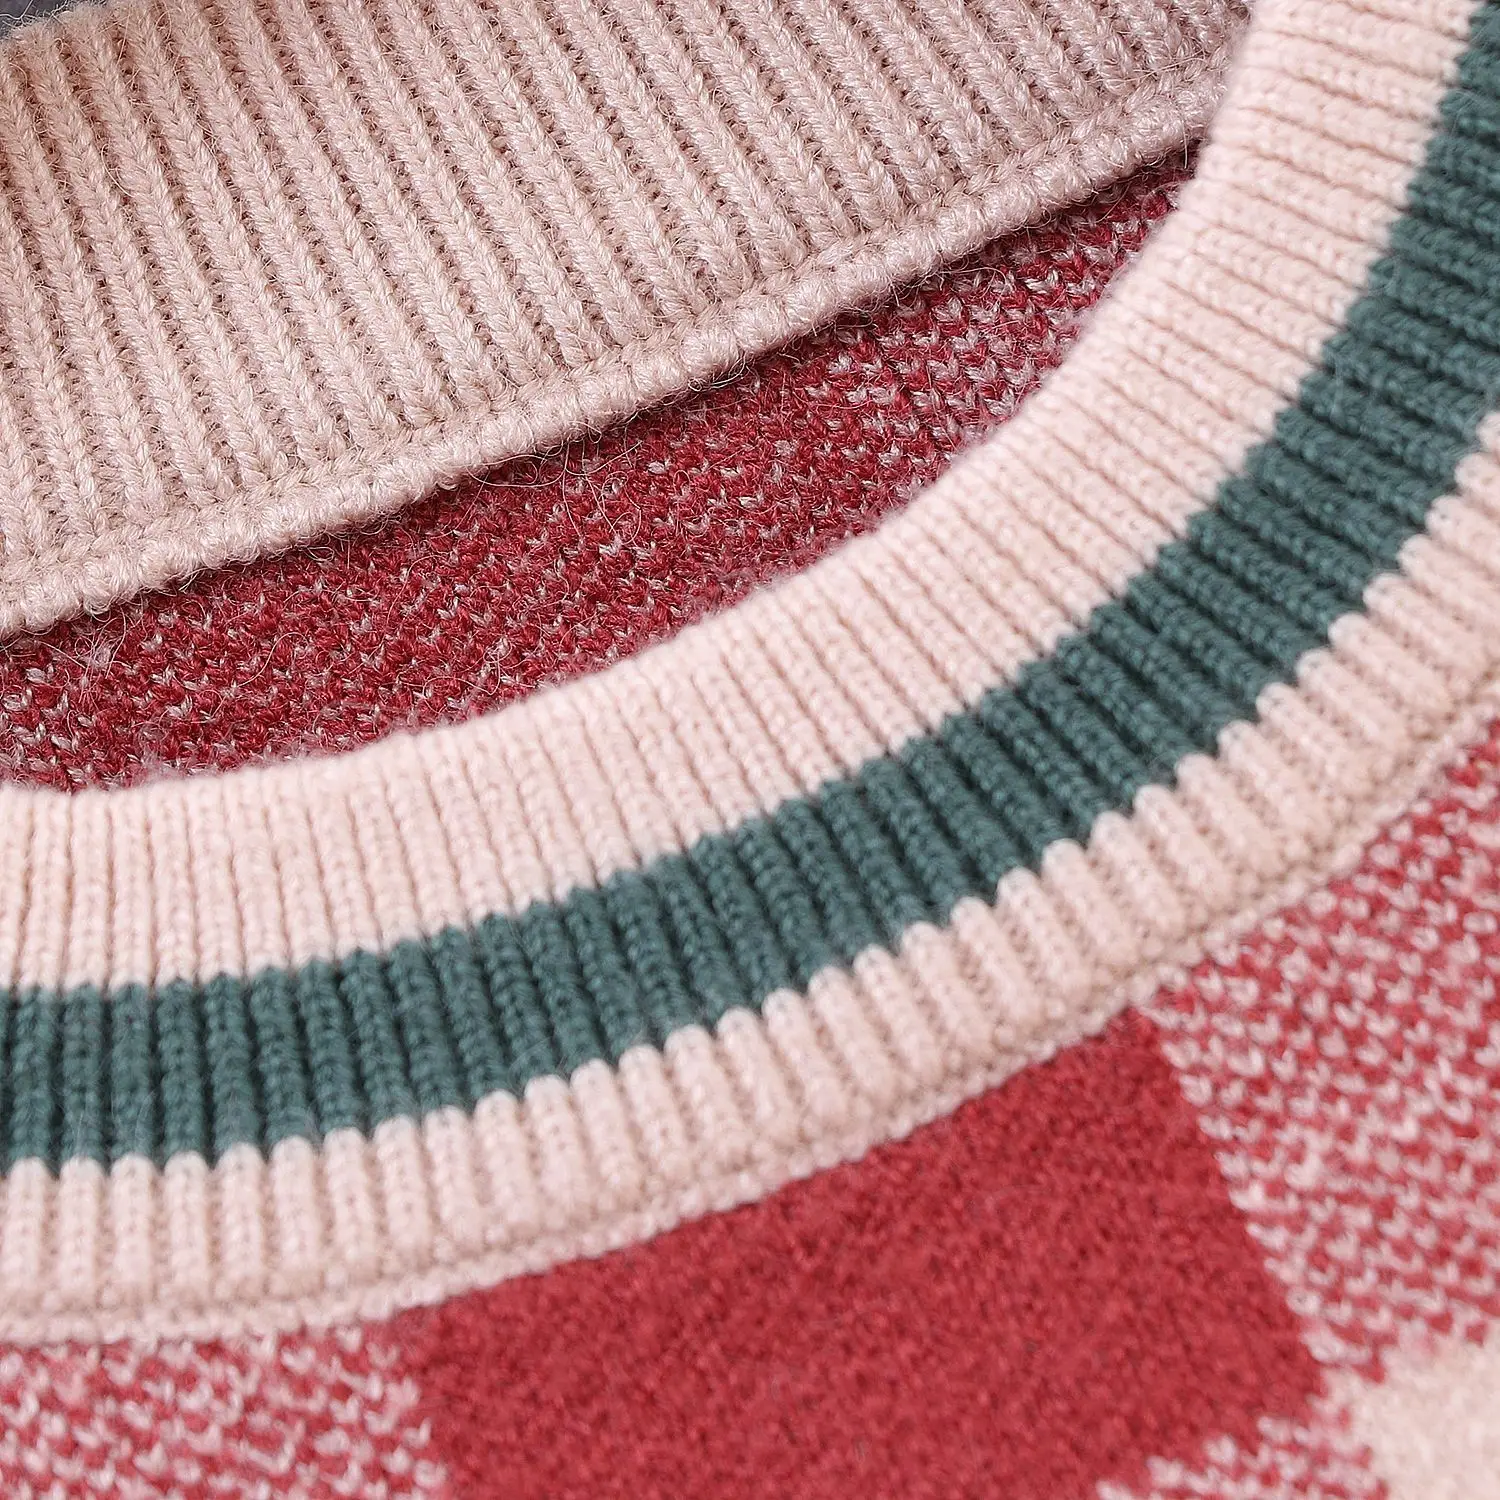 Свитера для маленьких мальчиков, Новые осенне-зимние клетчатые свитера с длинными рукавами, пуловер